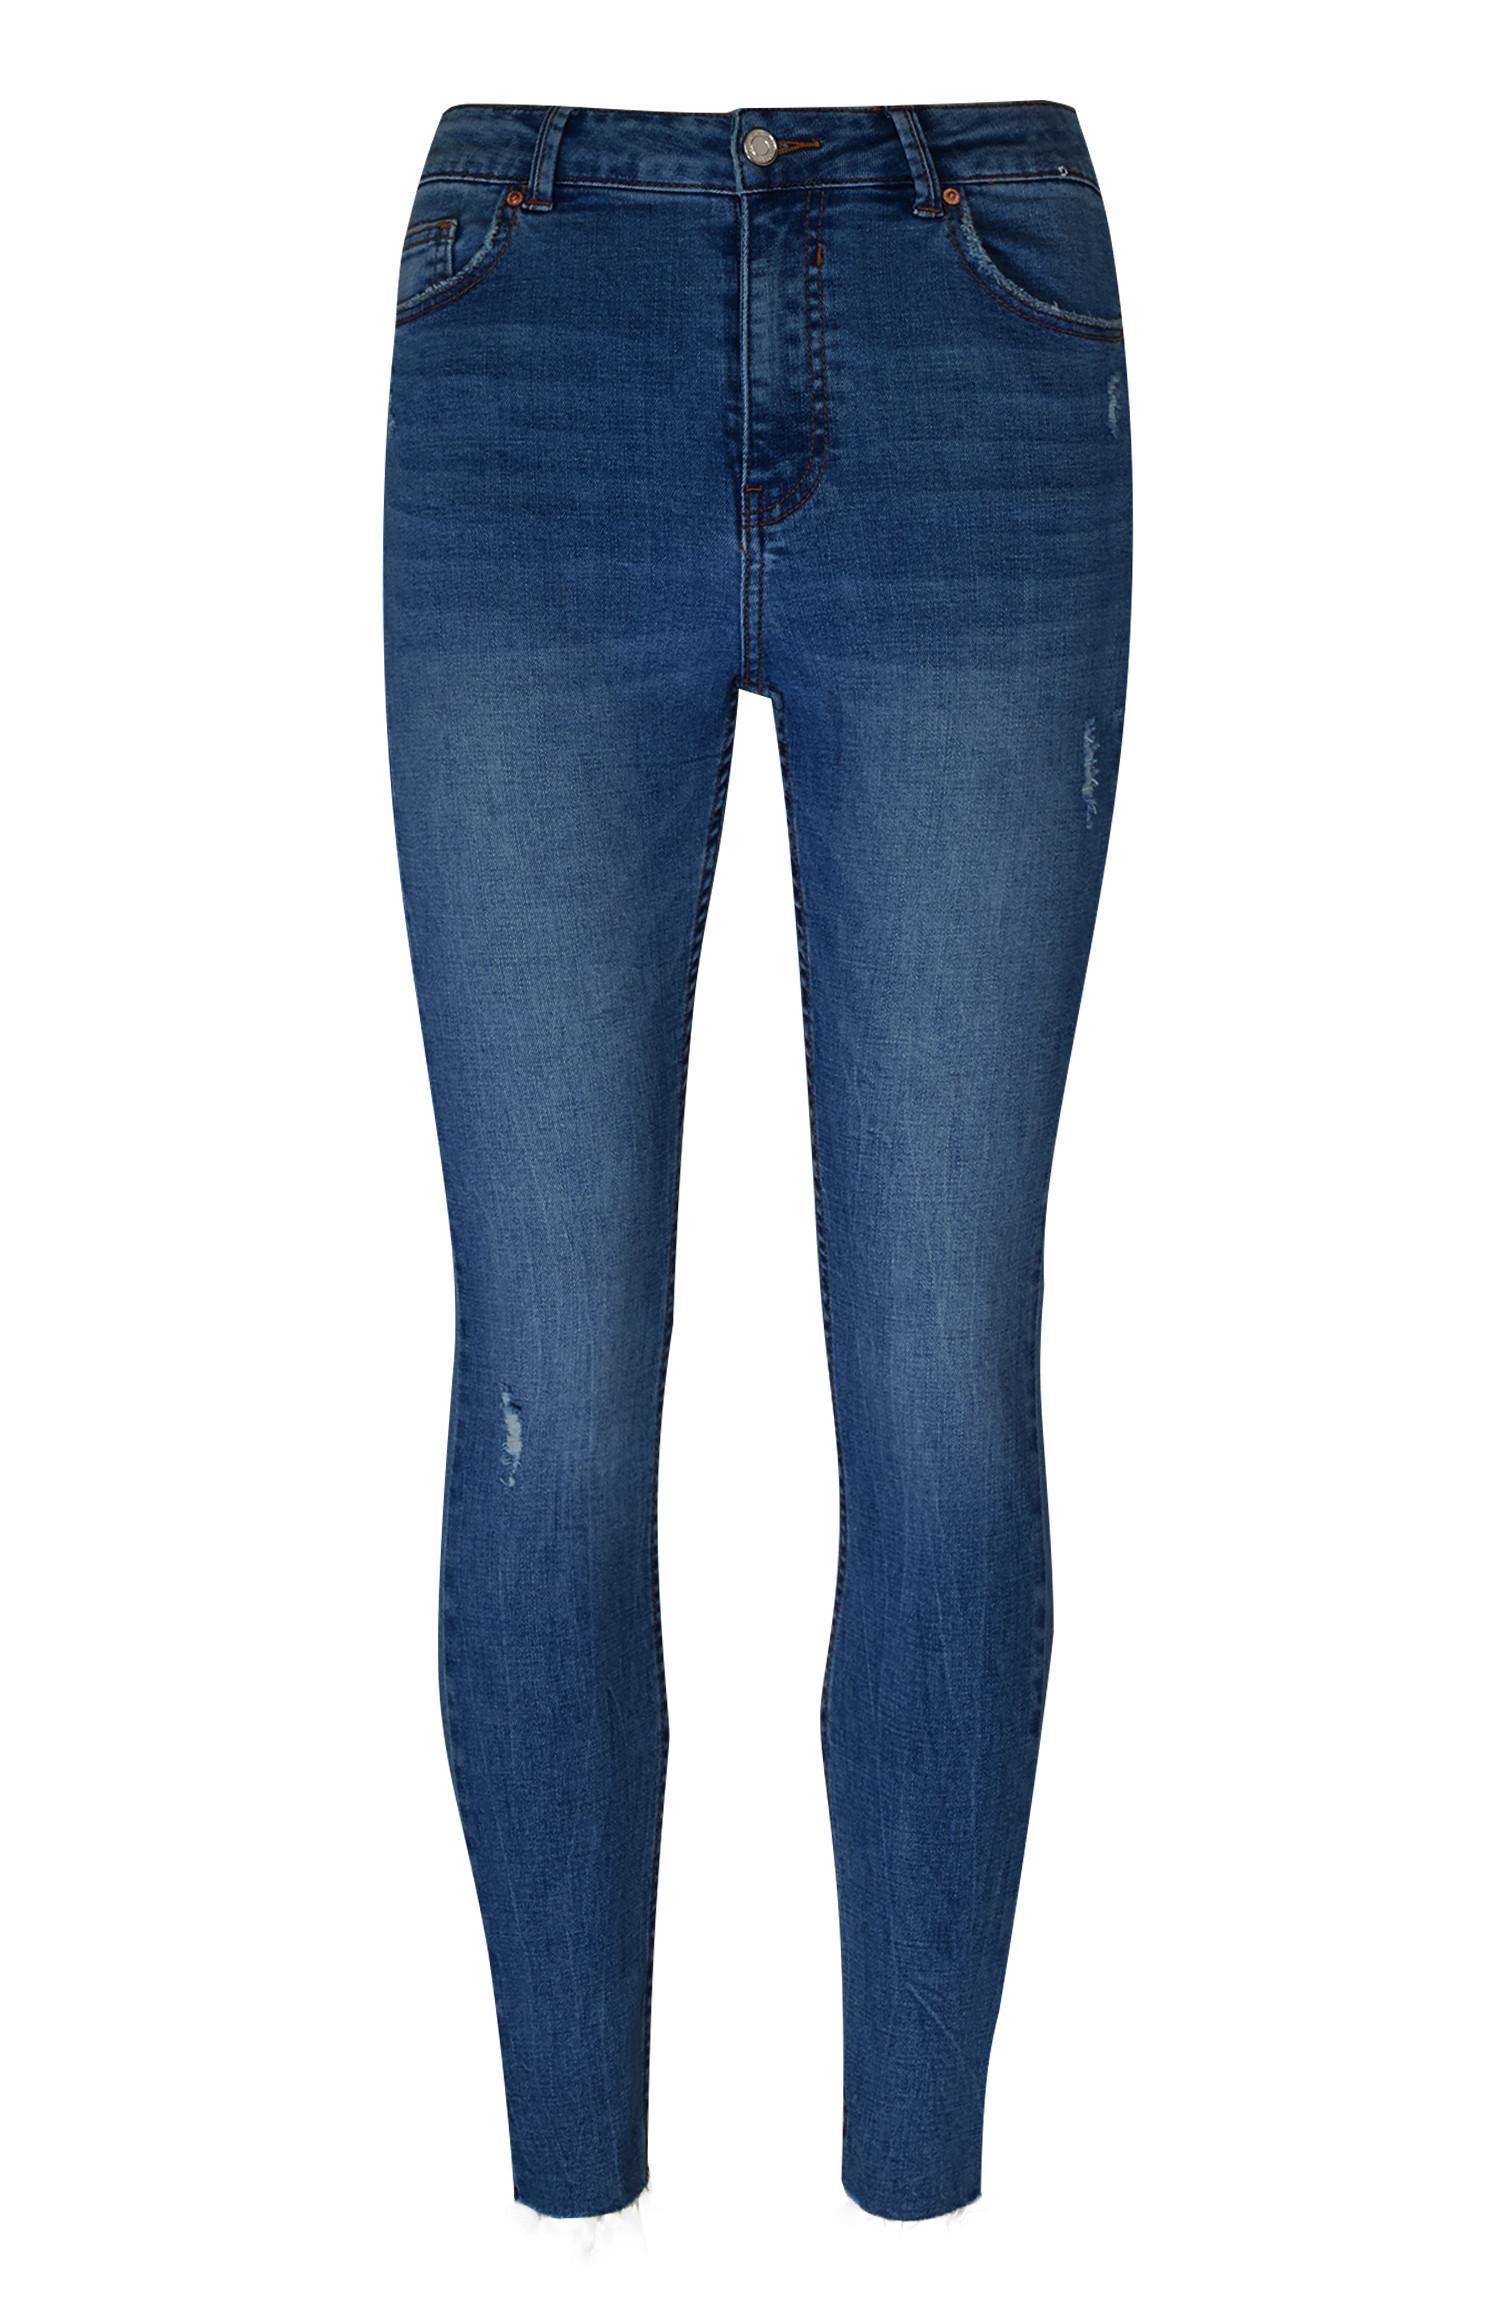 dark blue ankle grazer jeans